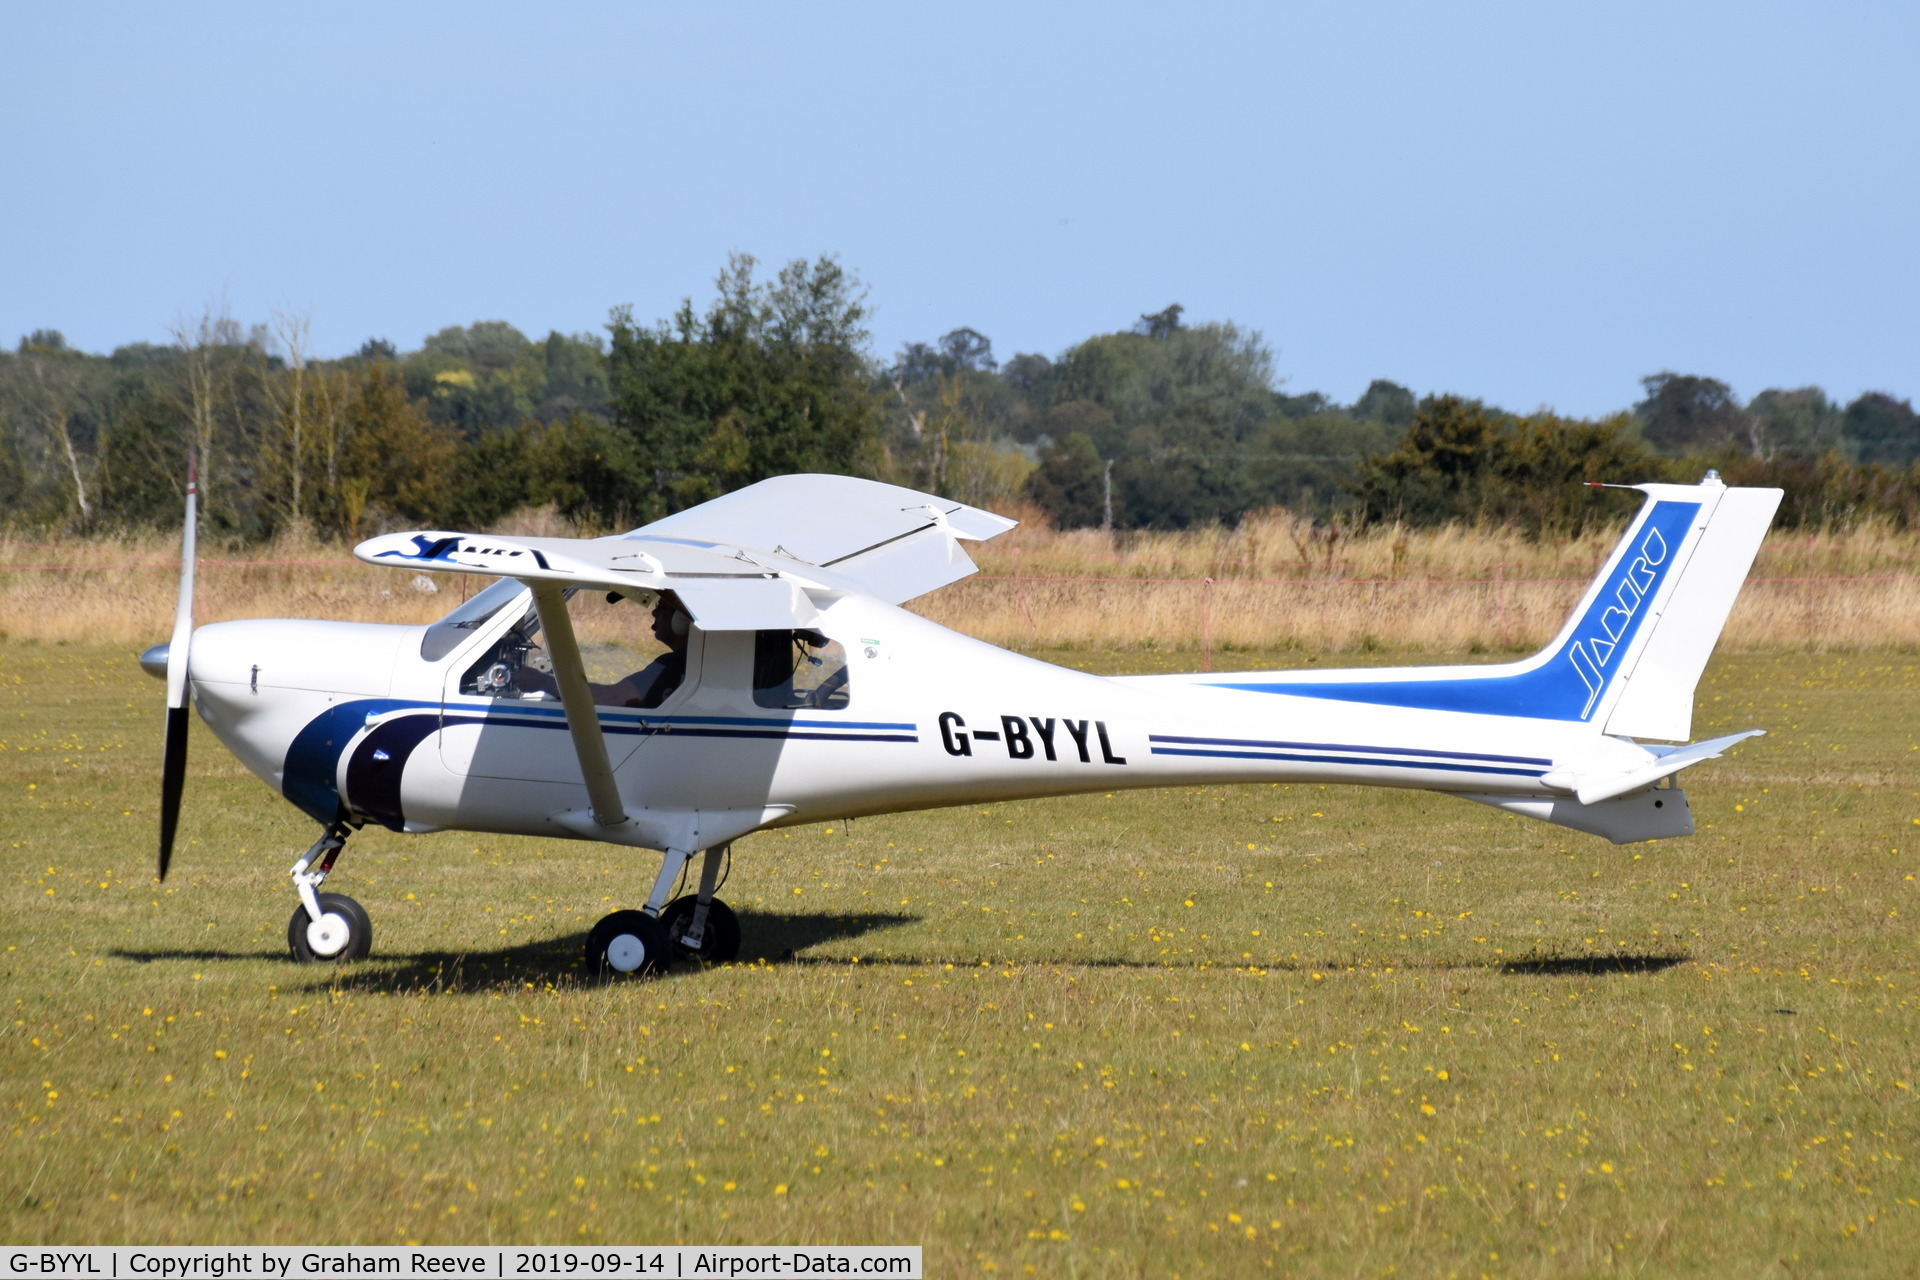 G-BYYL, 2000 Jabiru UL-450 C/N PFA 274A-13480, Just landed at, Bury St Edmunds, Rougham Airfield, UK.